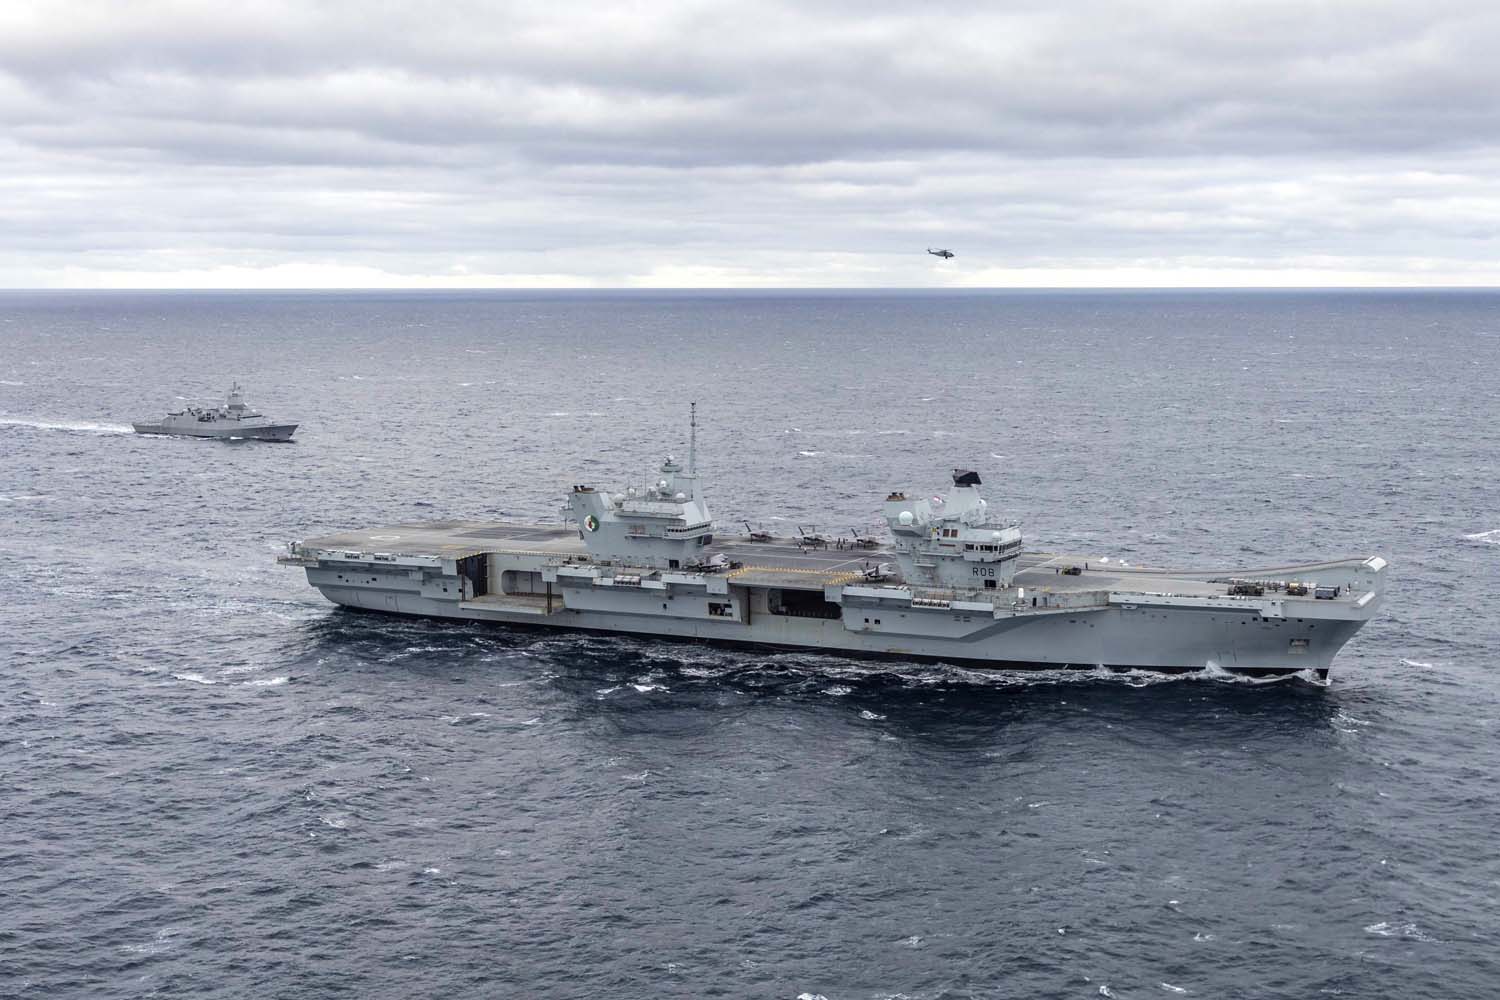 Le porte-avions britannique HMS Queen Elizabeth, qui transporte des chasseurs de cinquième génération F-35B Lightning II, est passé sous le commandement de l'OTAN pour la première fois dans l'histoire.-15